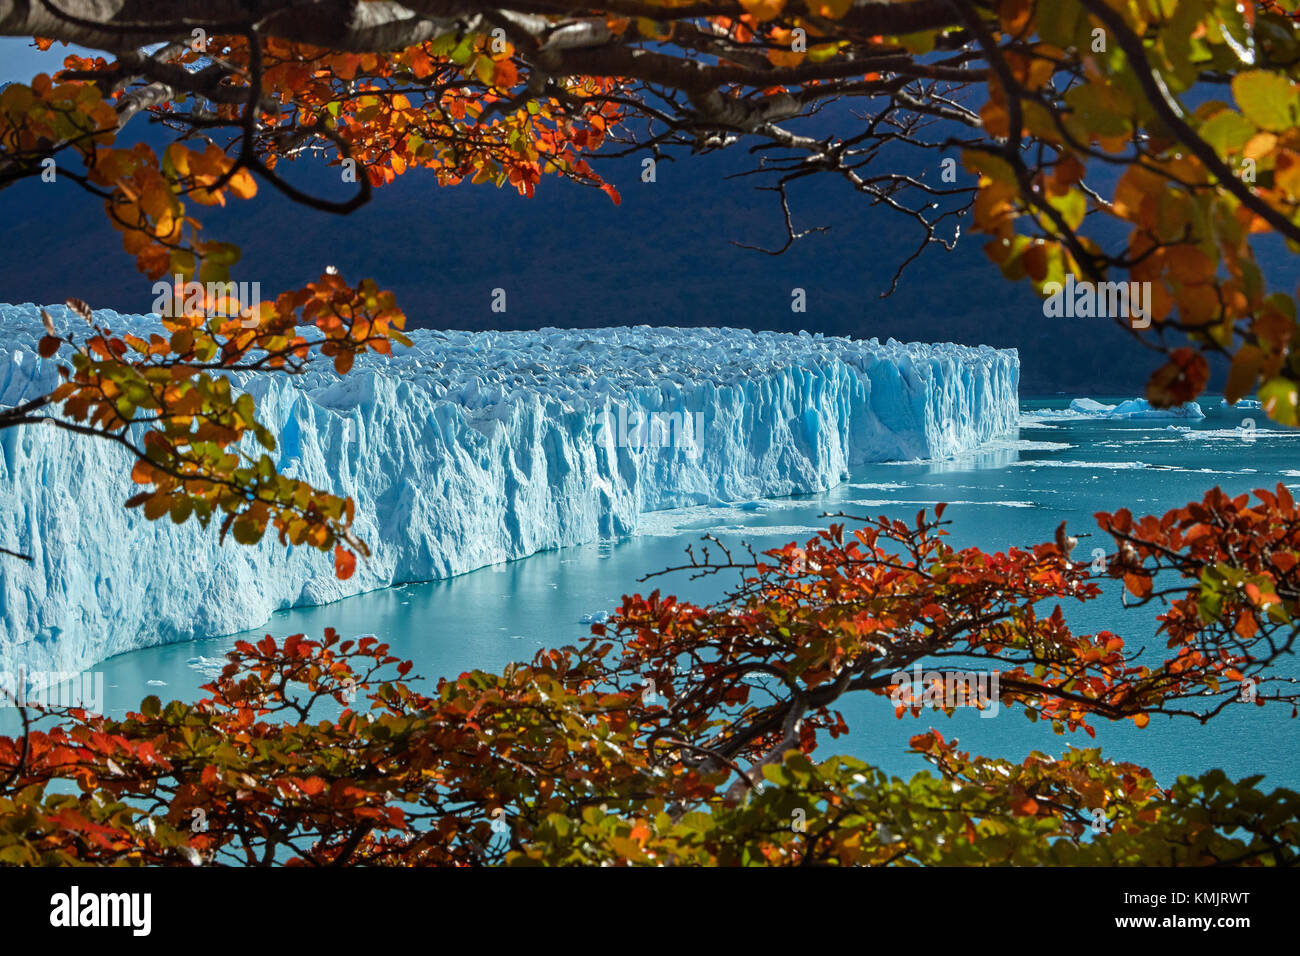 Le glacier Perito Moreno, et lenga arbres en automne, Parque Nacional Los Glaciares (zone du patrimoine mondial), Patagonie, Argentine, Amérique du Sud Banque D'Images